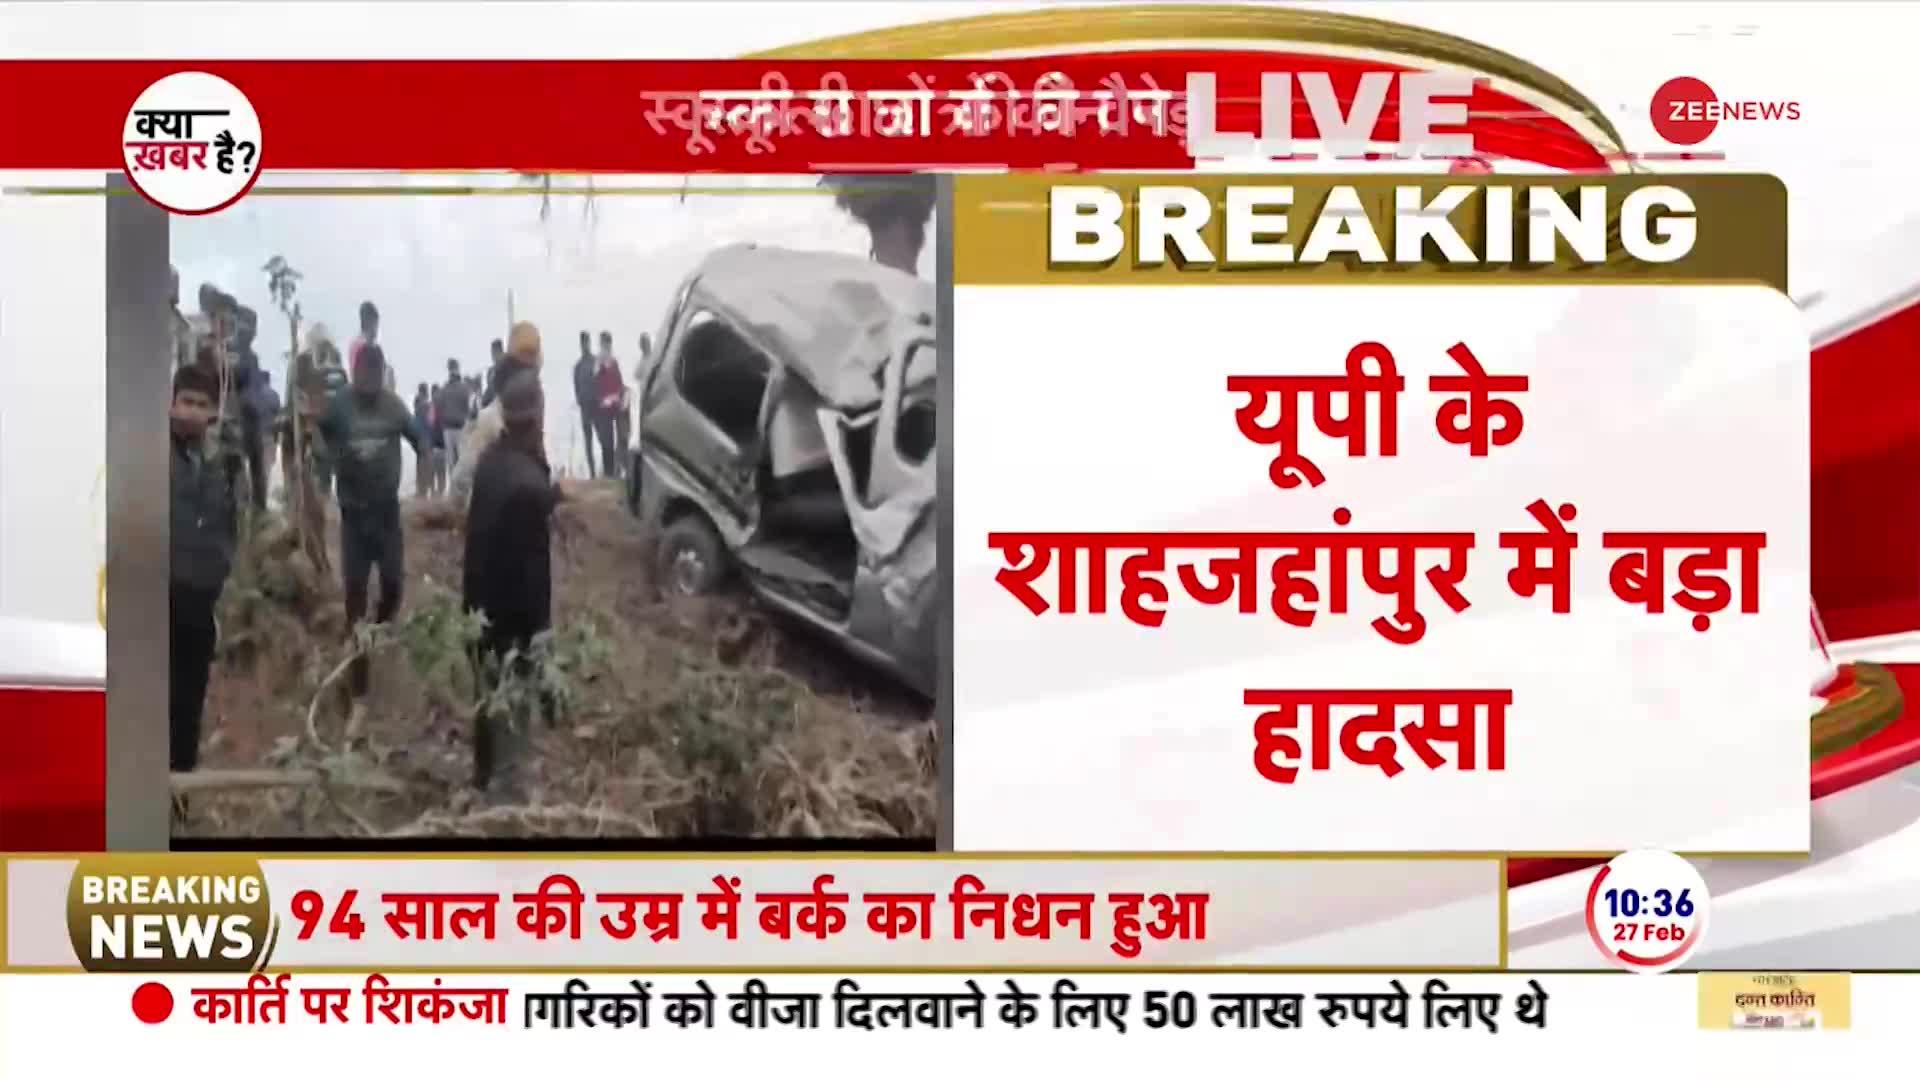 Breaking News: शाहजहांपुर में पेड़ से टकराई छात्रों से भरी वैन, हादसे में अब तक 4 छात्रों की मौत